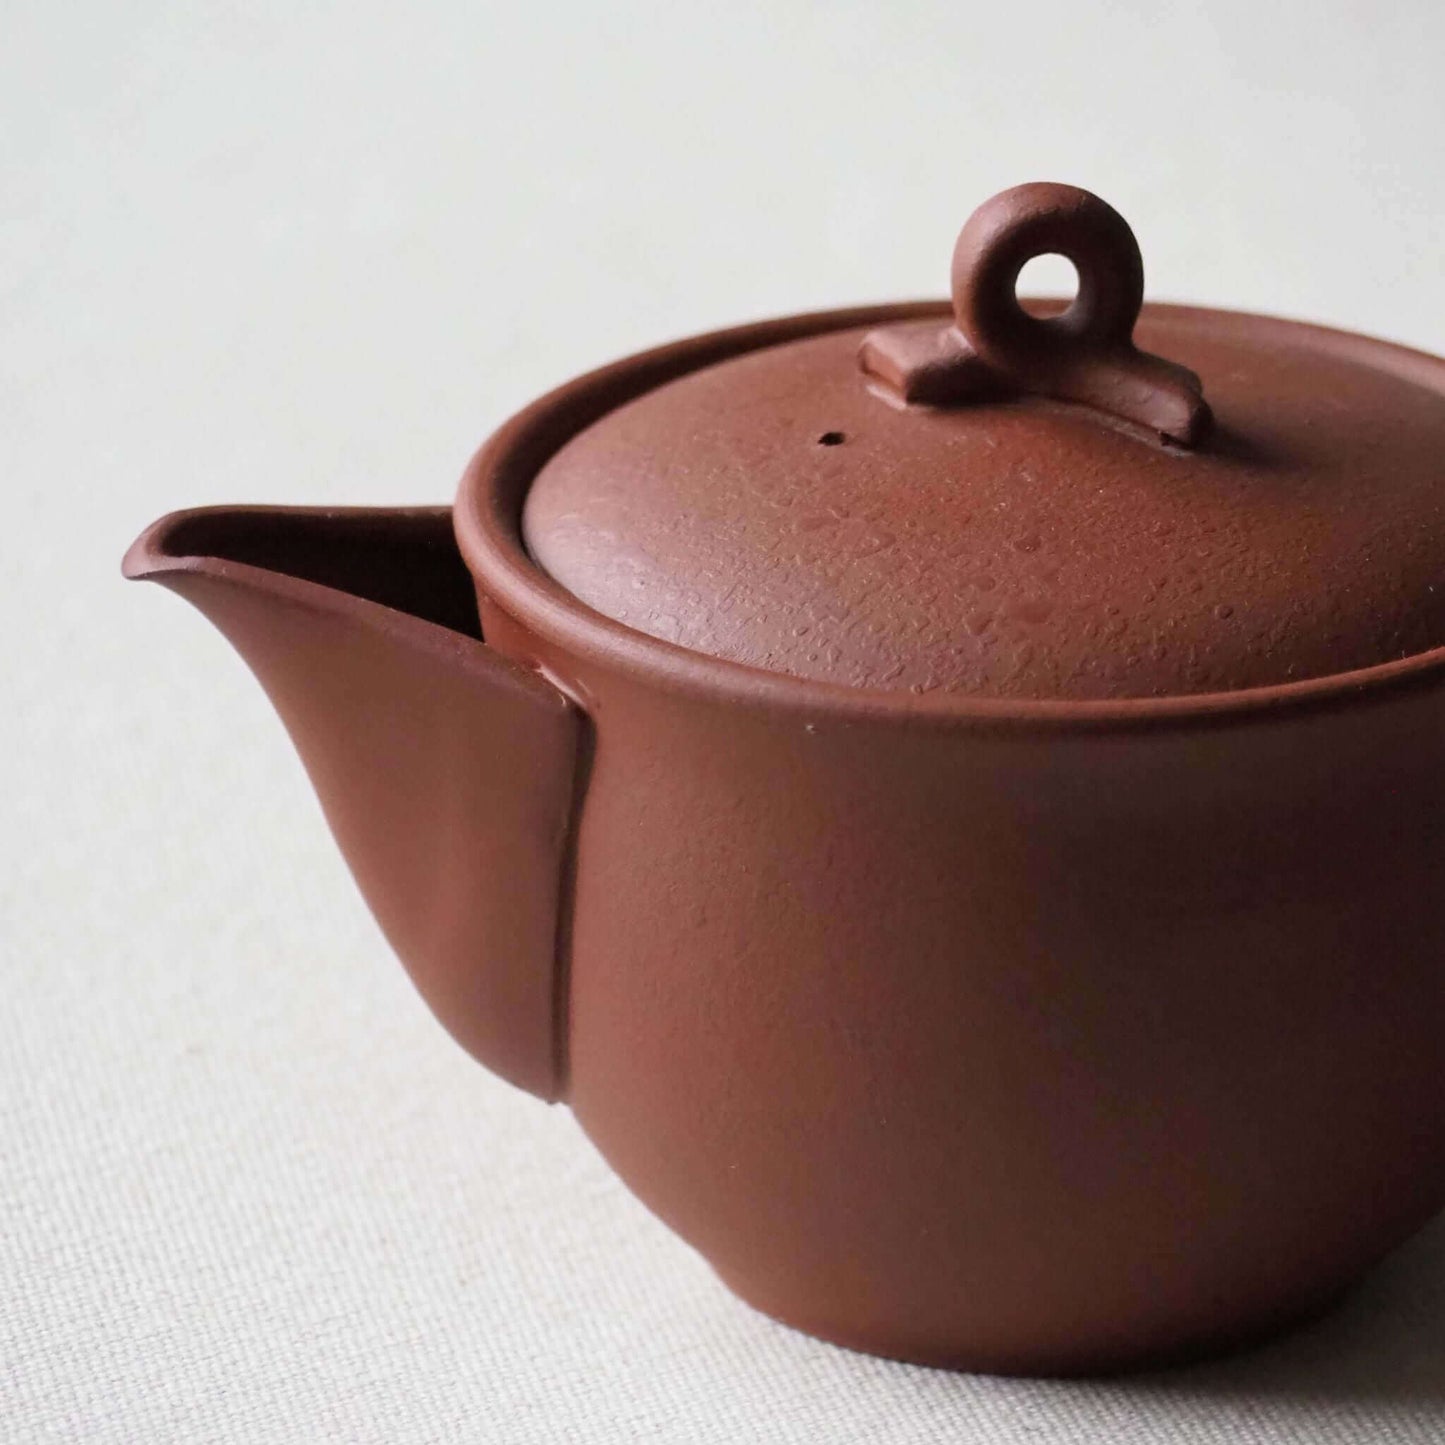 常滑焼の赤茶色の茶器の写真